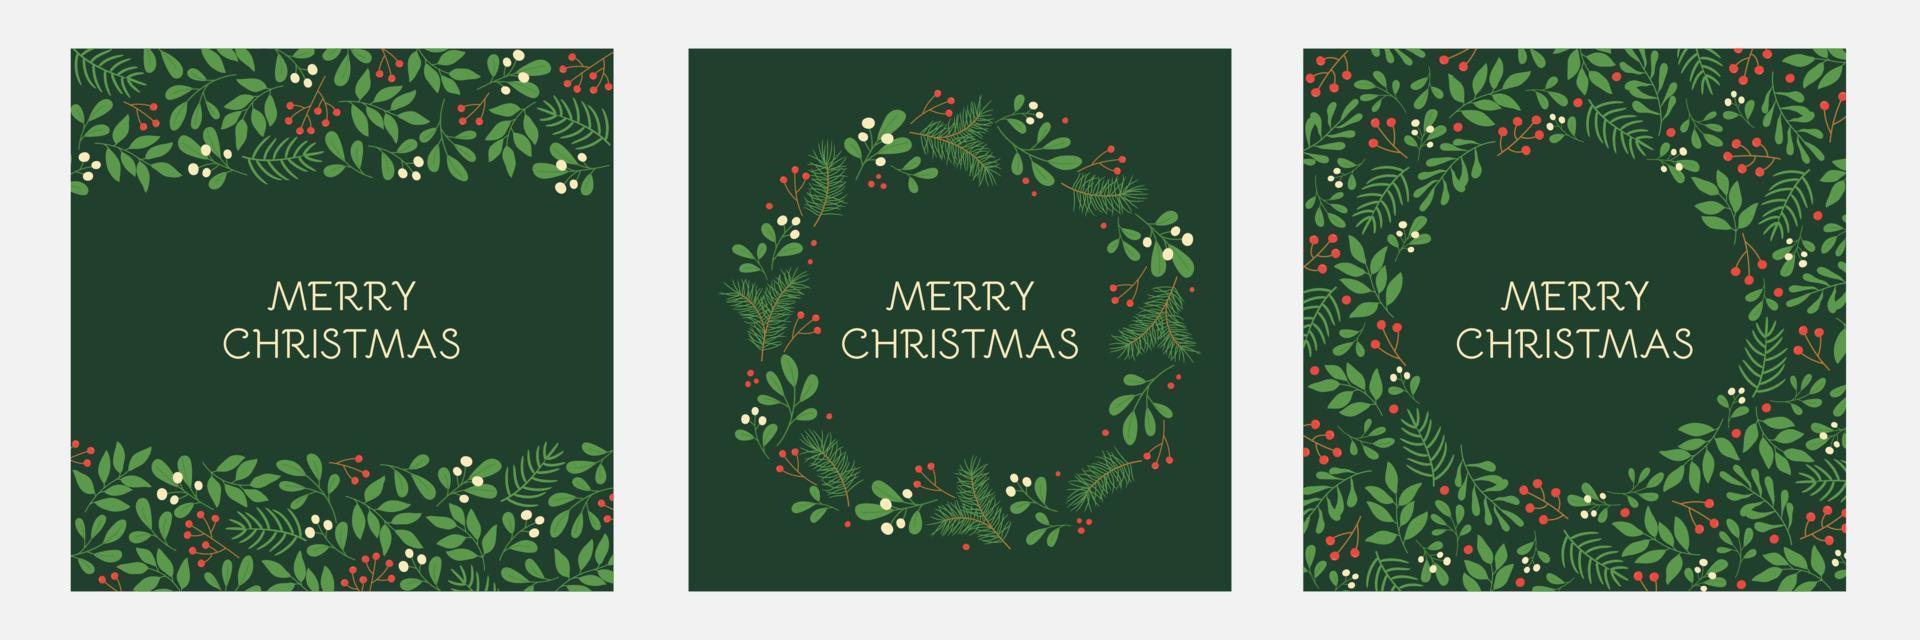 conjunto de tarjetas de felicitación navideñas con marcos florales y adornos navideños. patrones de ramitas de invierno en colores verdes. vector